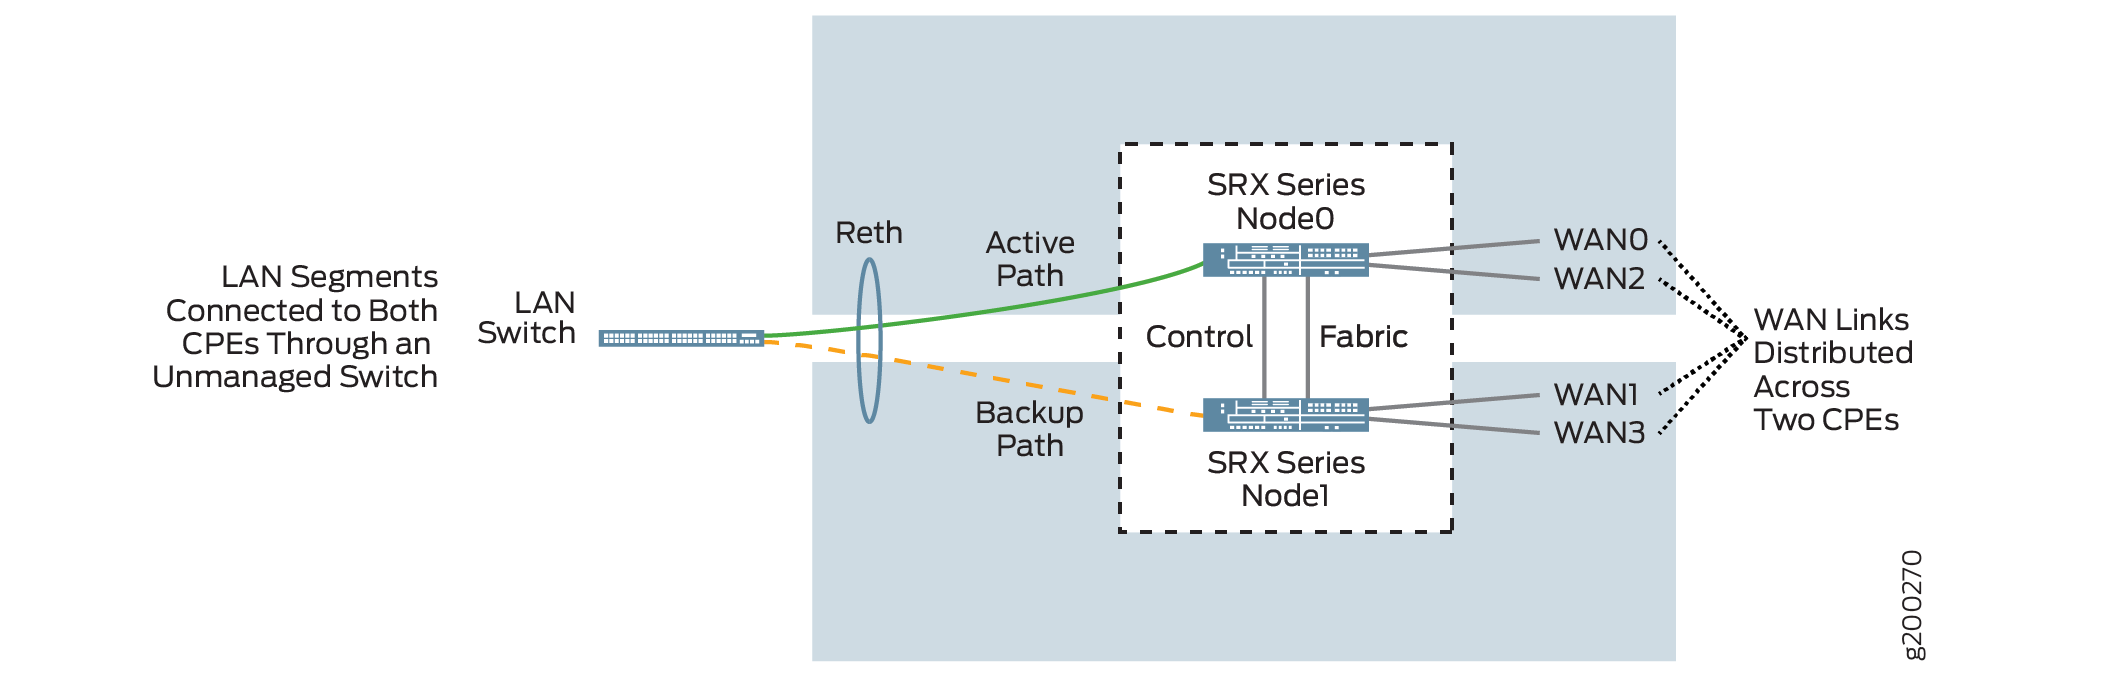 Dual CPE Device Topology - SRX Series Firewalls